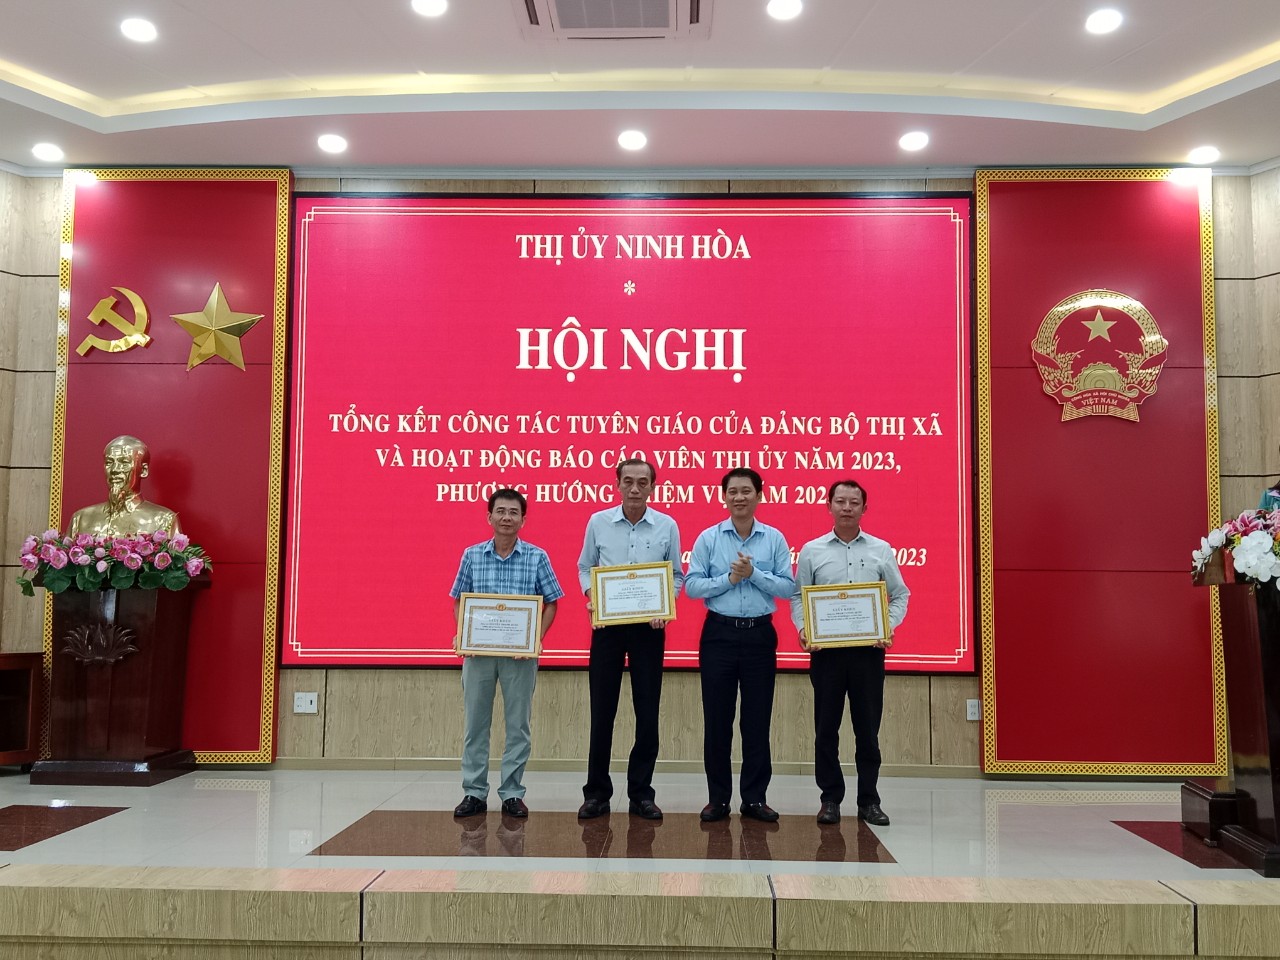 Thị ủy Ninh Hòa: Tổng kết công tác Tuyên giáo năm 2023, triển khai nhiệm vụ năm 2024